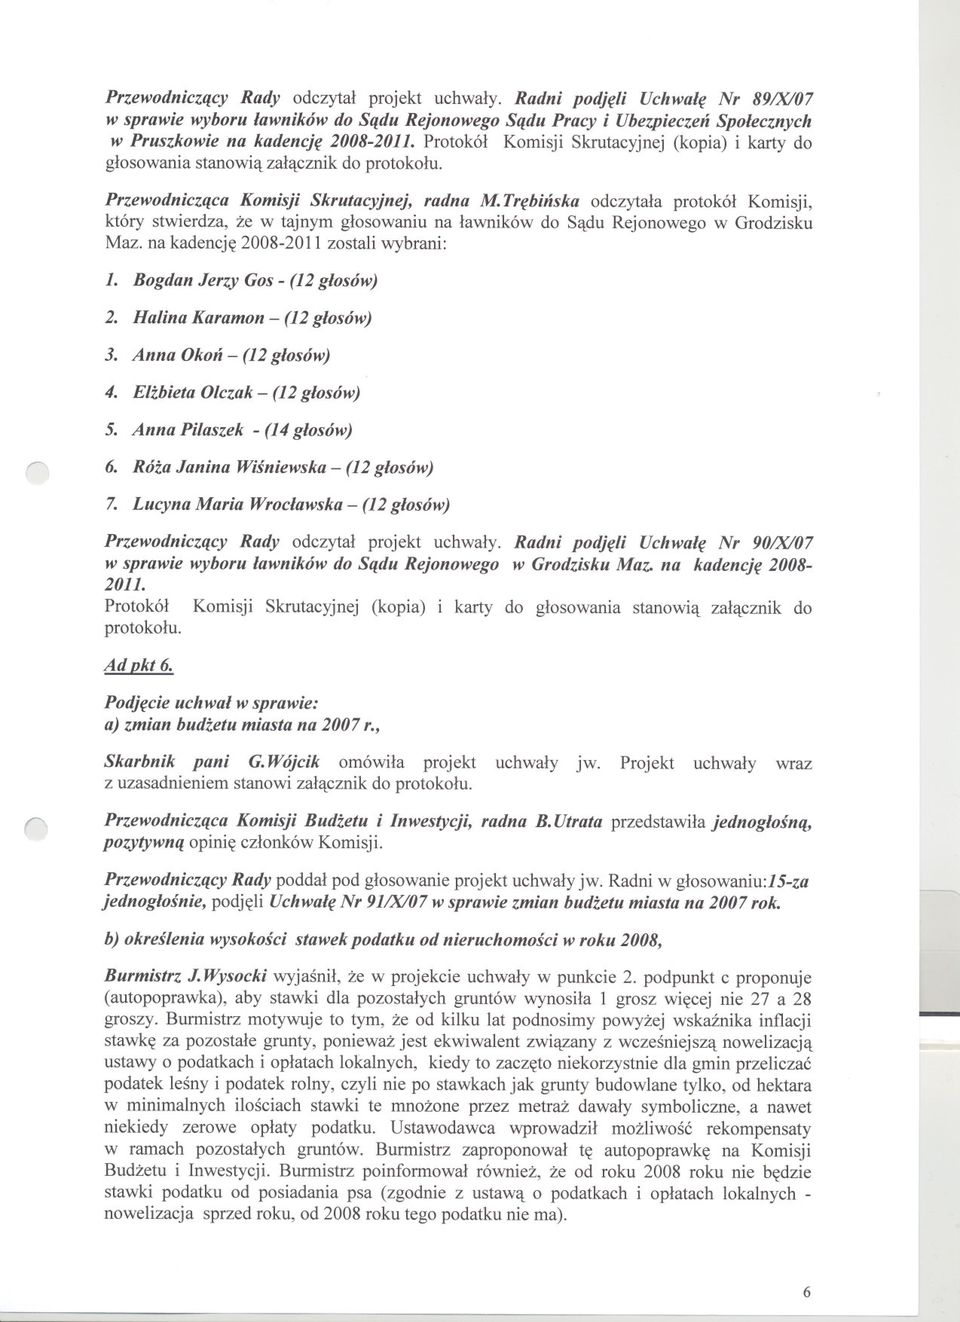 Trebinska odczytala protokól Komisji, który stwierdza, ze w tajnym glosowaniu na lawników do Sadu Rejonowego w Grodzisku Maz. na kadencje 2008-2011 zostali wybrani: 1. Bogdan Jerzy Gos-(12glosów) 2.